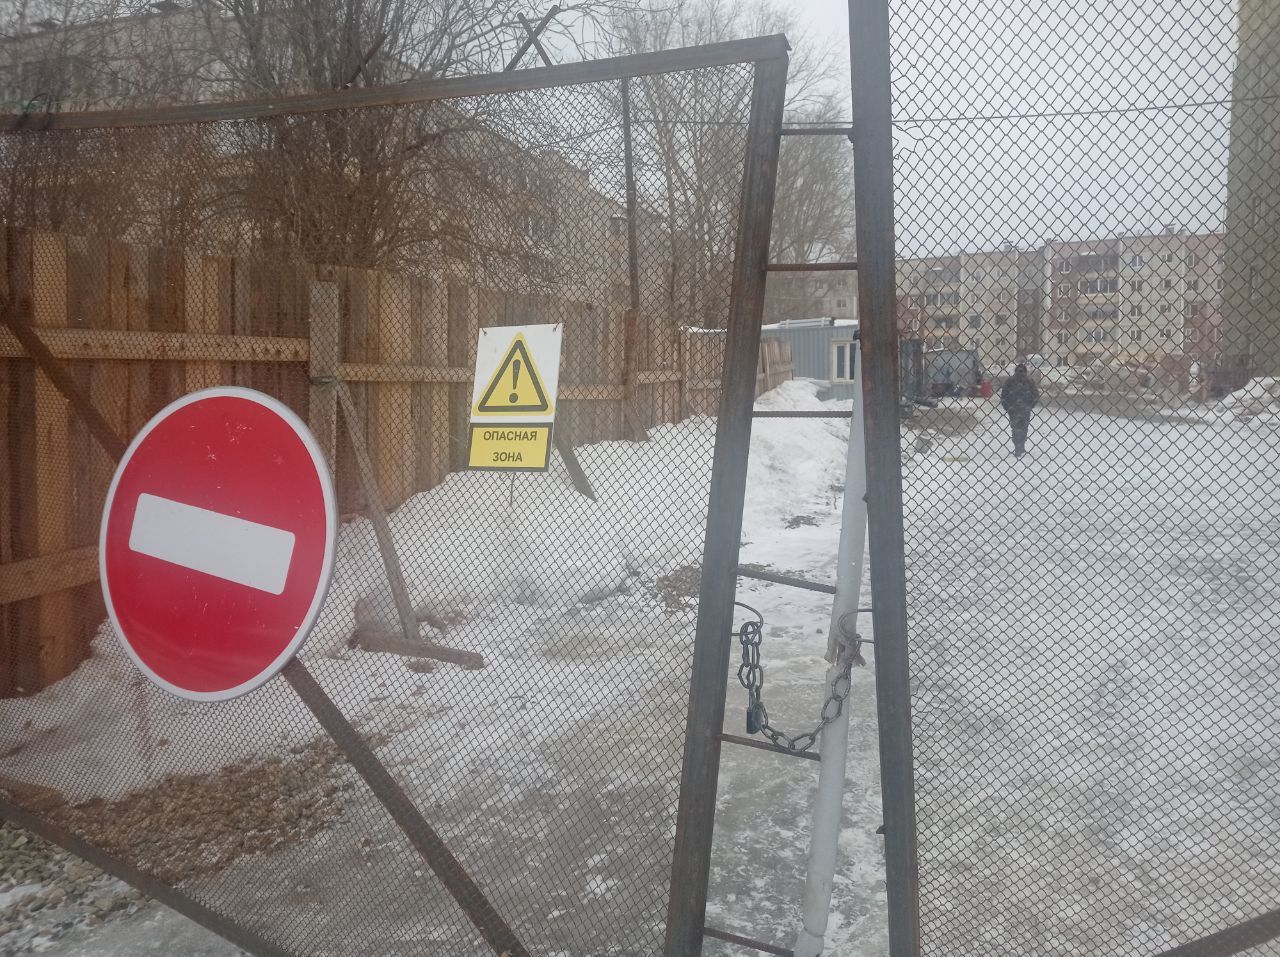 Новостройка на Циолковского: девять этажей готовы, пять - оштукатурены внутри. Обещают закончить в срок